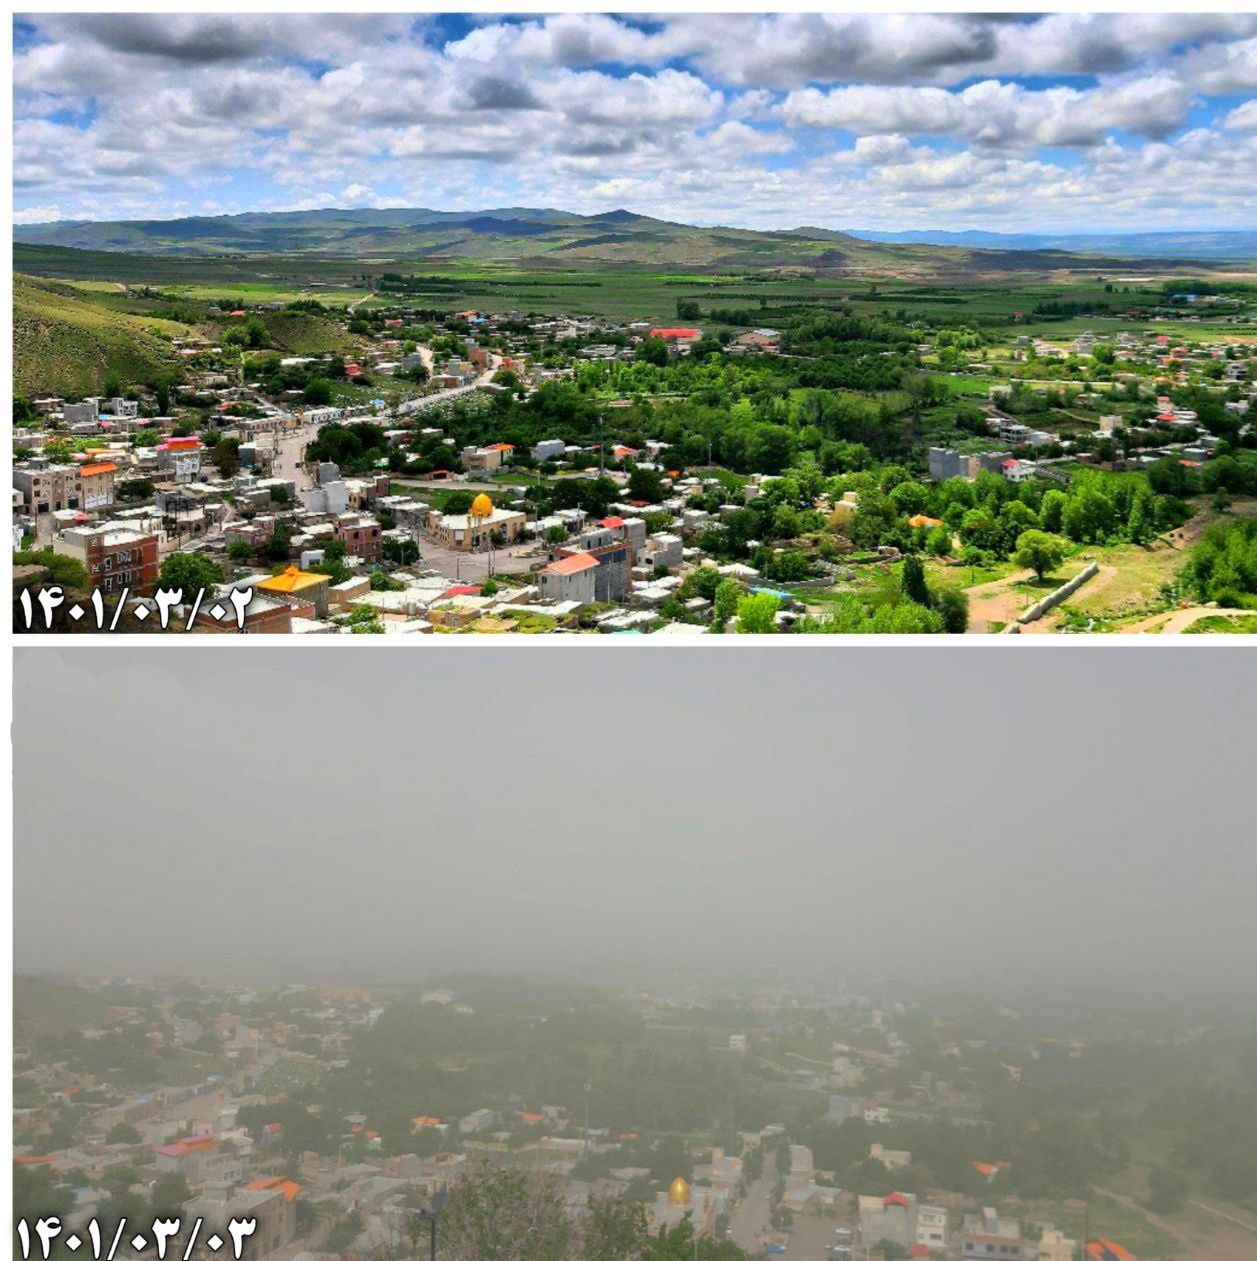 تفاوت دو عکس از طبیعت اردبیل قبل و بعد آلودگی هوا و ریزگردها